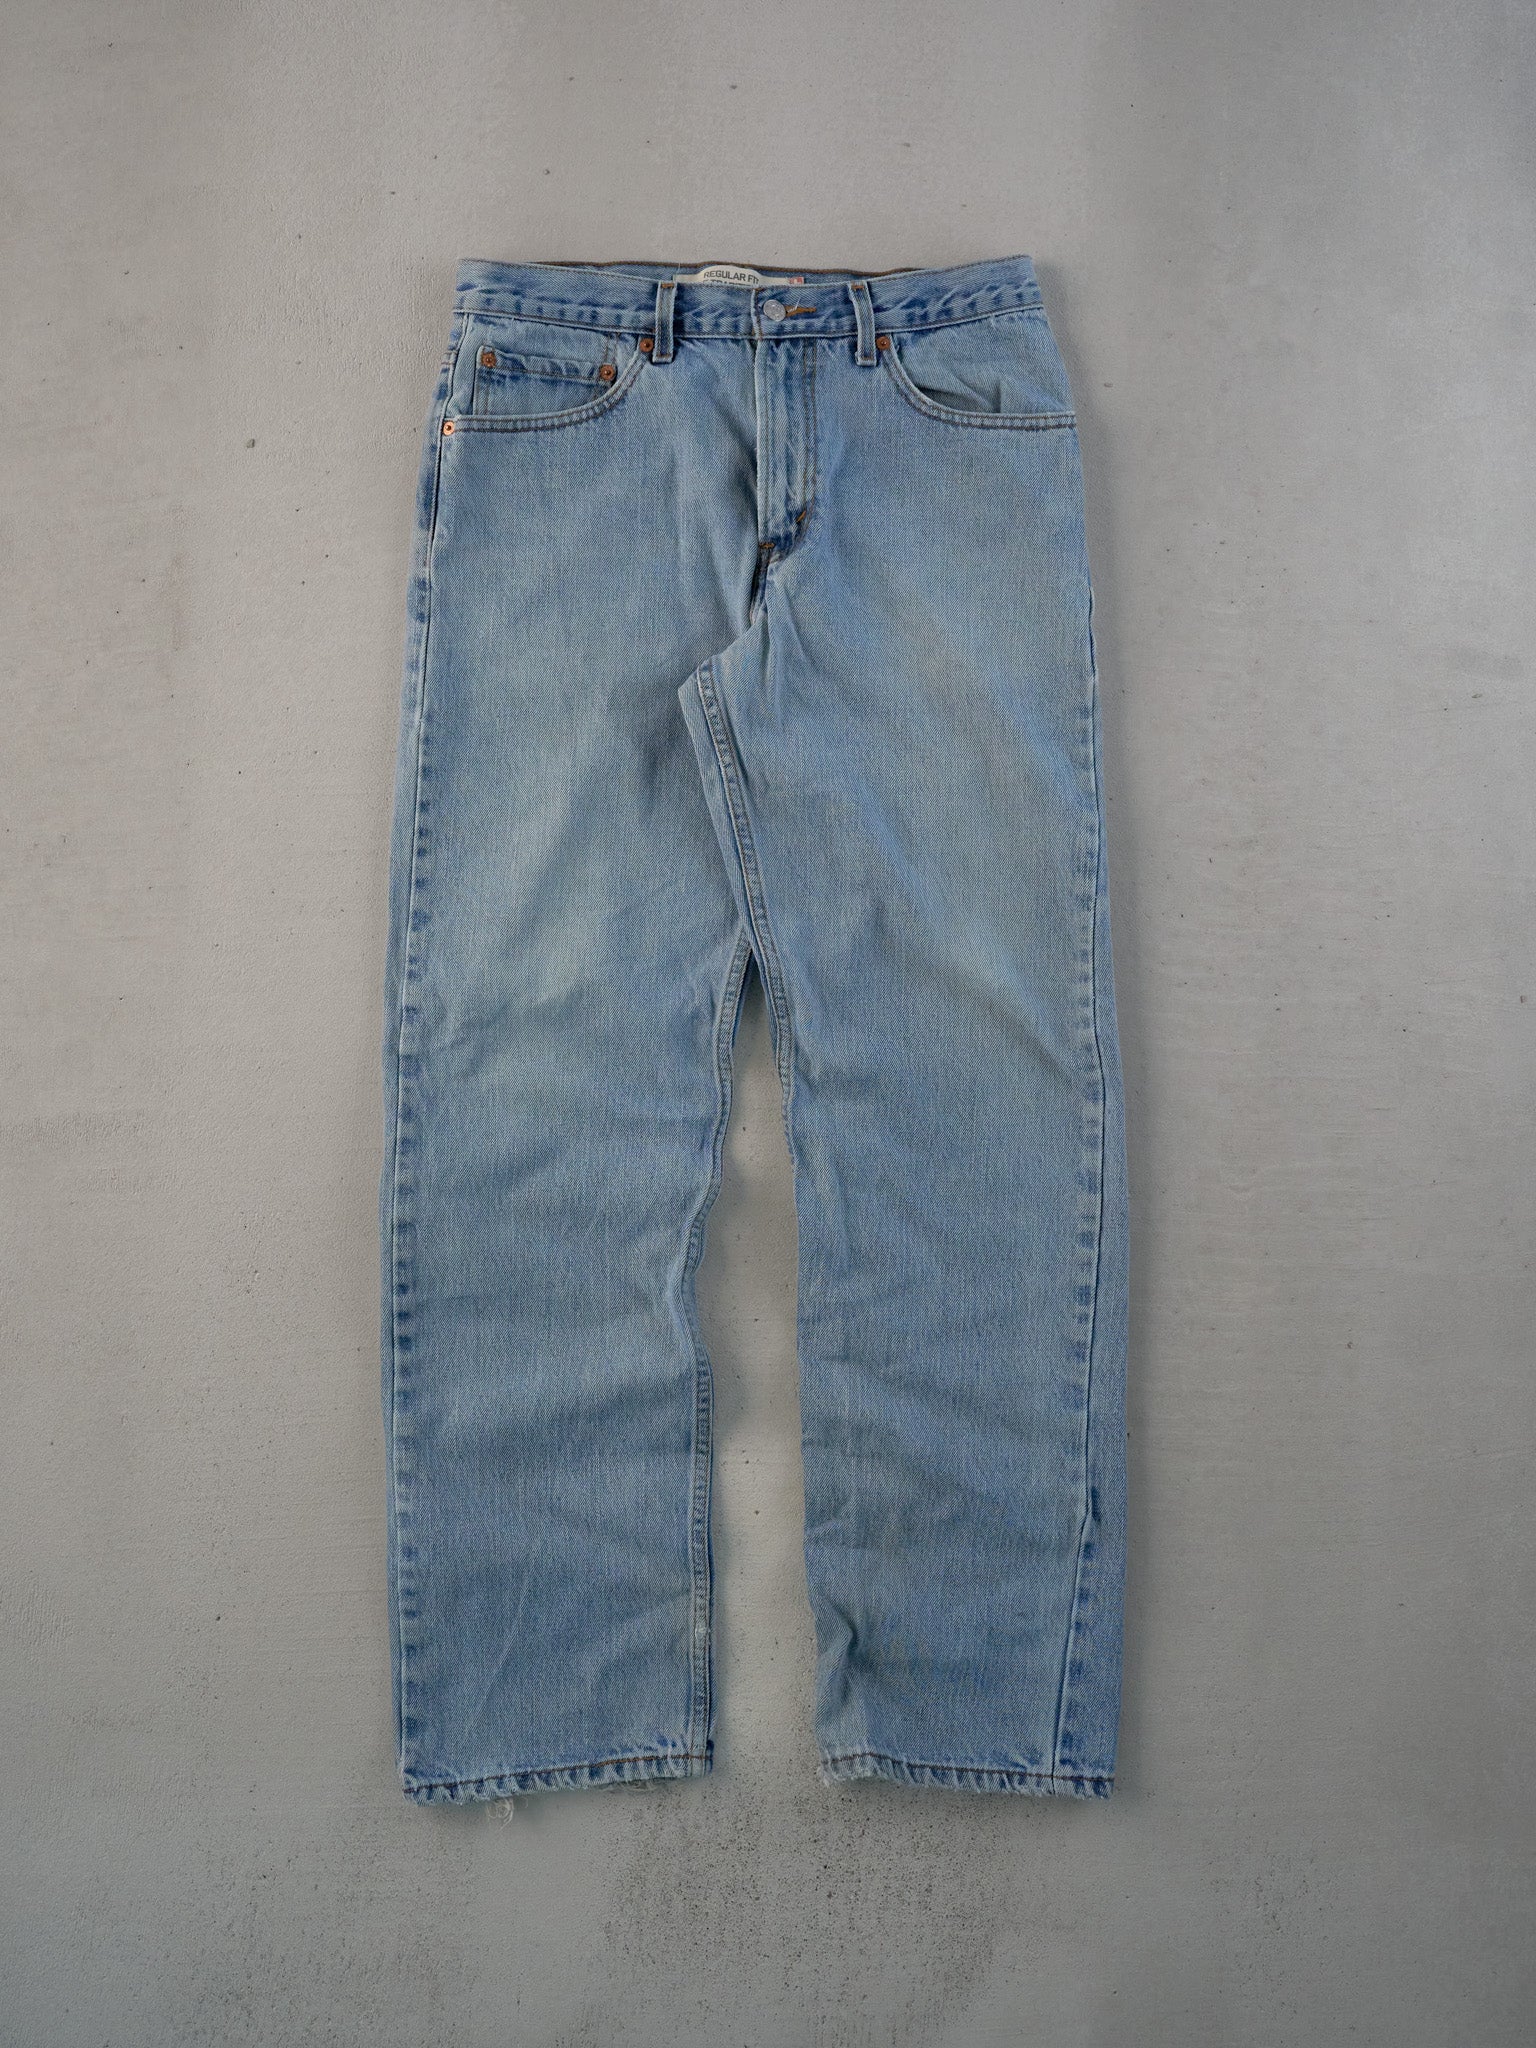 Vintage 90s Light Blue Levi's 505 Denim Jeans (30x31)